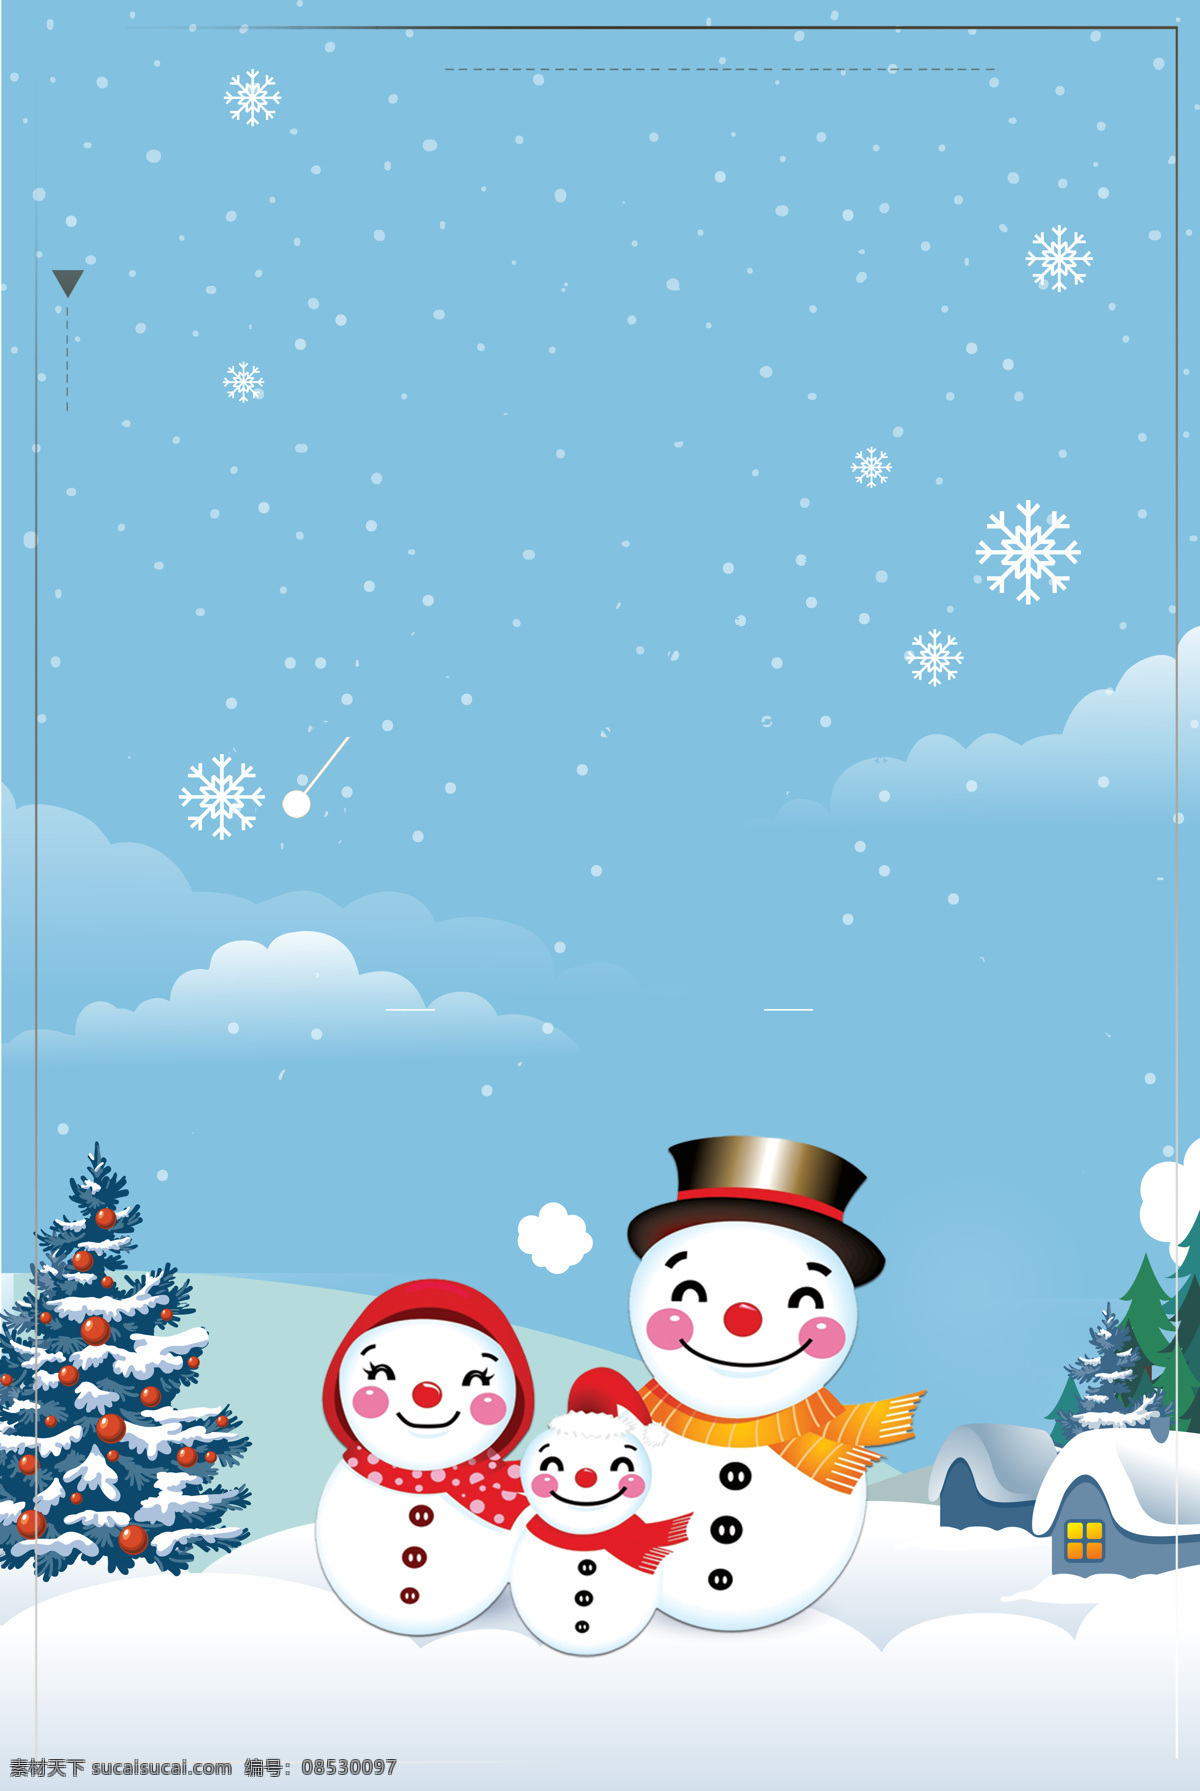 浪漫 圣诞 雪人 背景 广告 海报 圣诞树 圣诞雪人 唯美 小清新 宣传 雪花